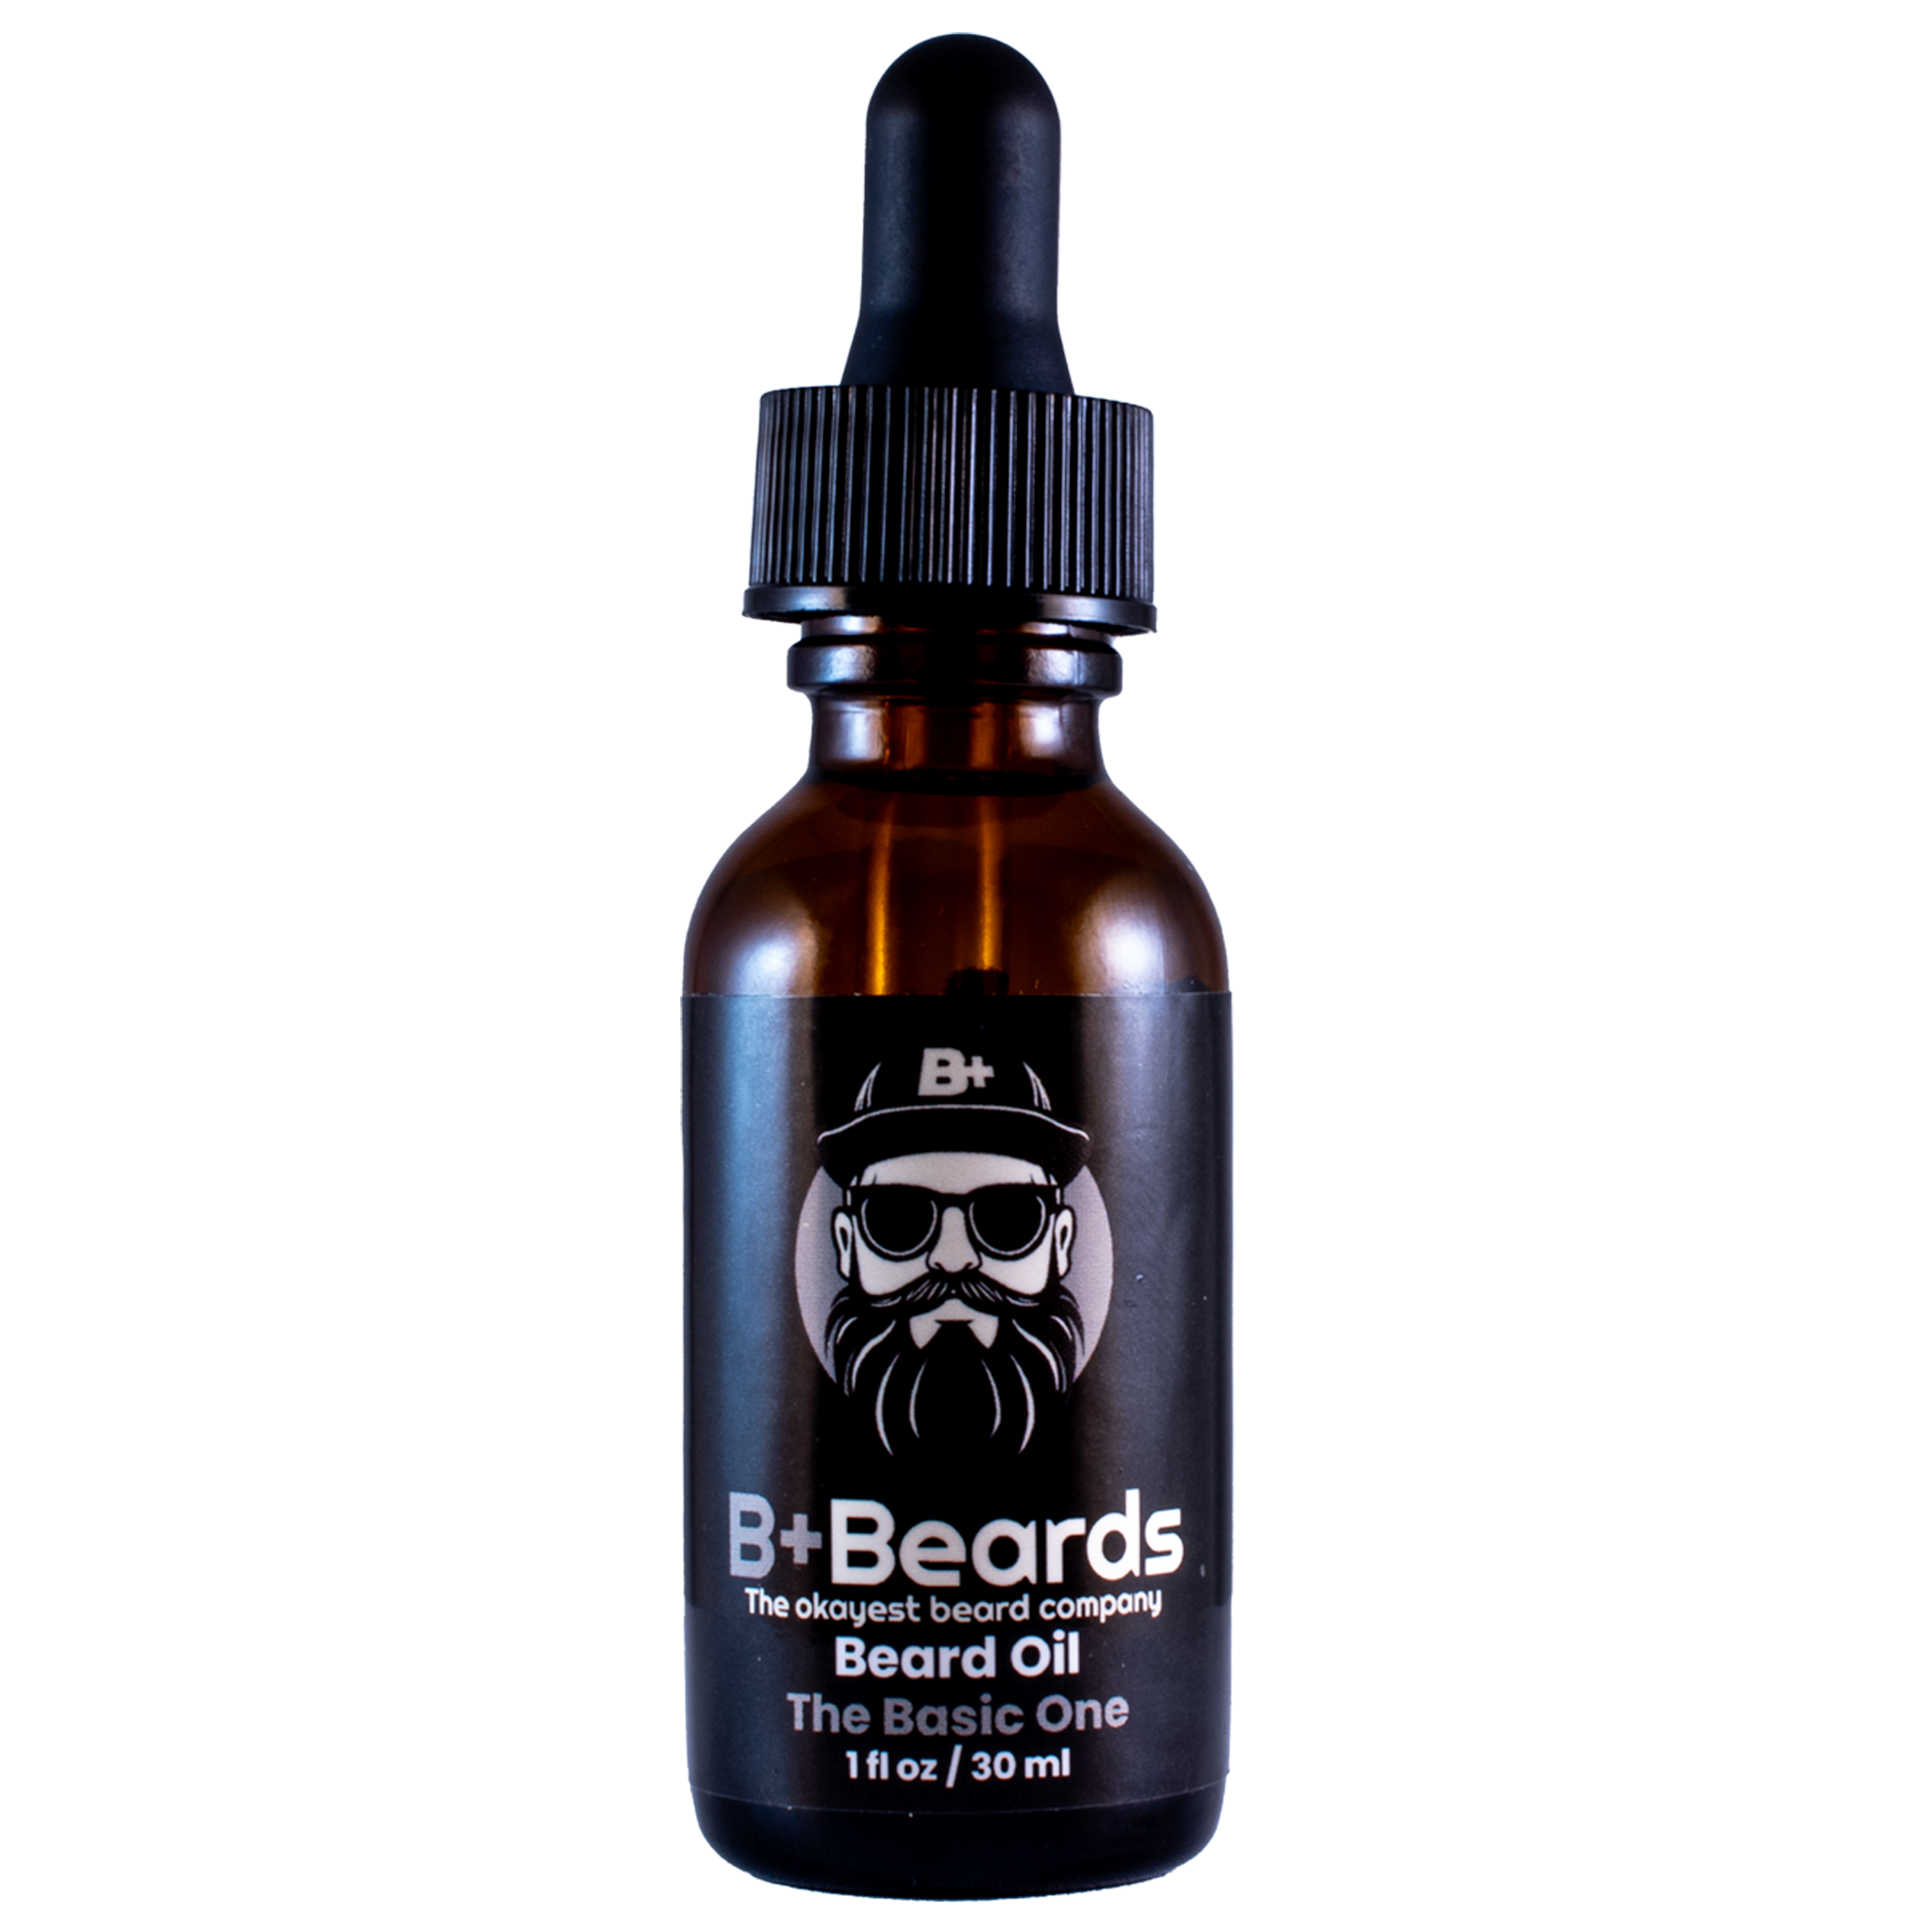 The Basic One Beard Oil